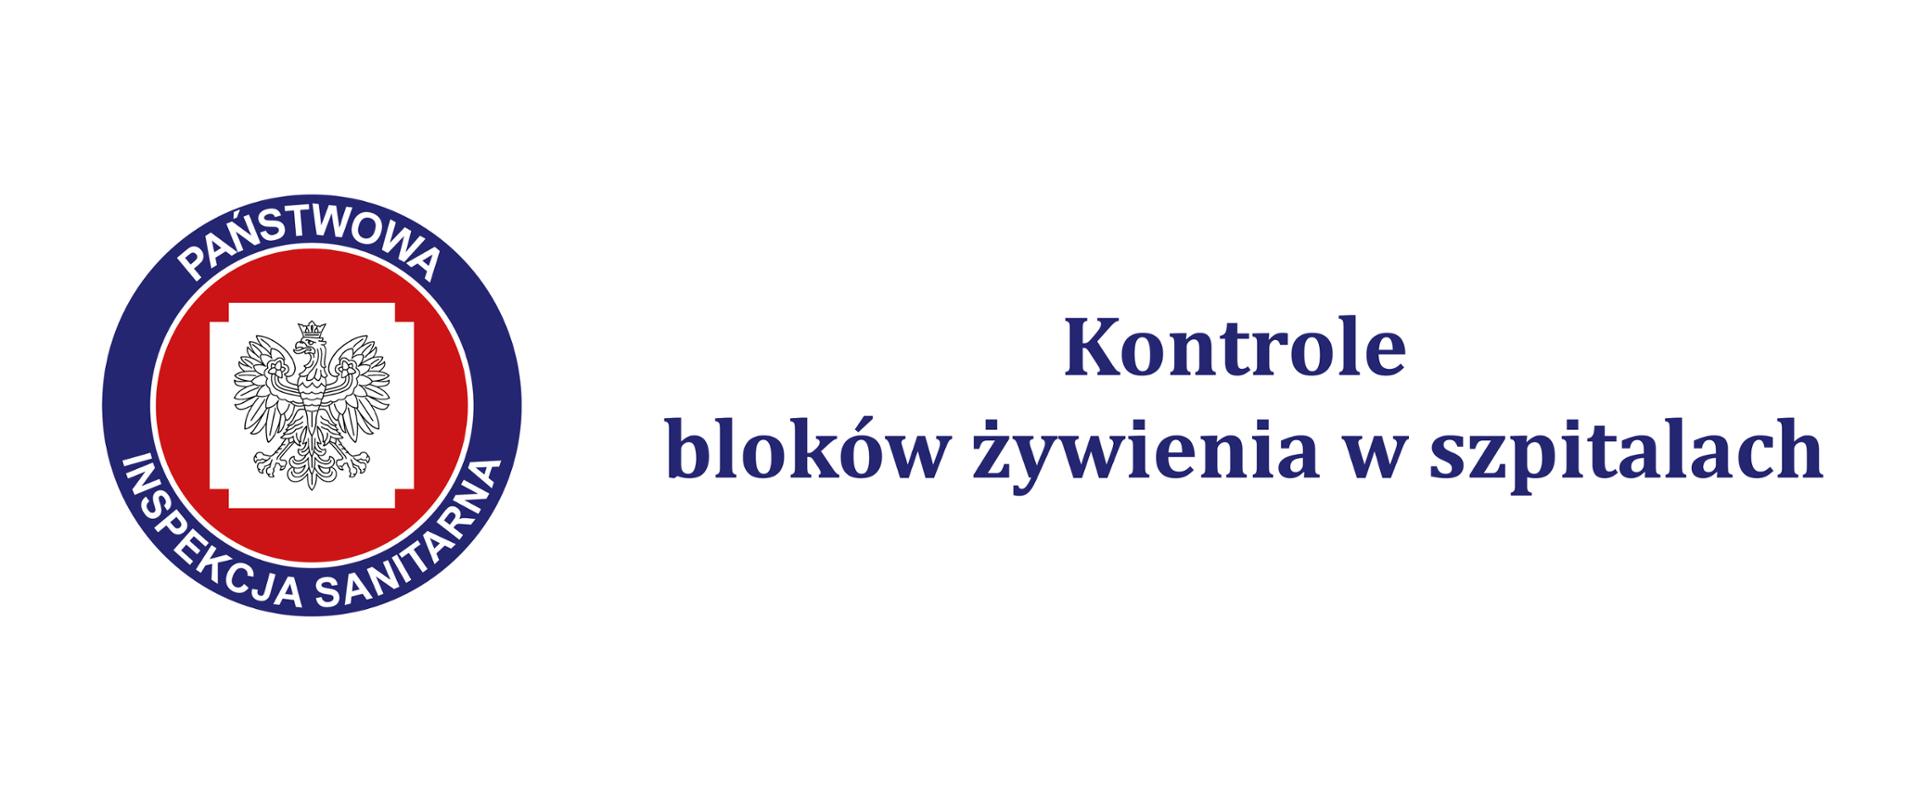 Na zdjęciu znajduje się logo Powiatowej Stacji Sanitarno-Epidemiologicznej w Poznaniu wraz z tekstem Kontrole bloków żywienia w szpitalach